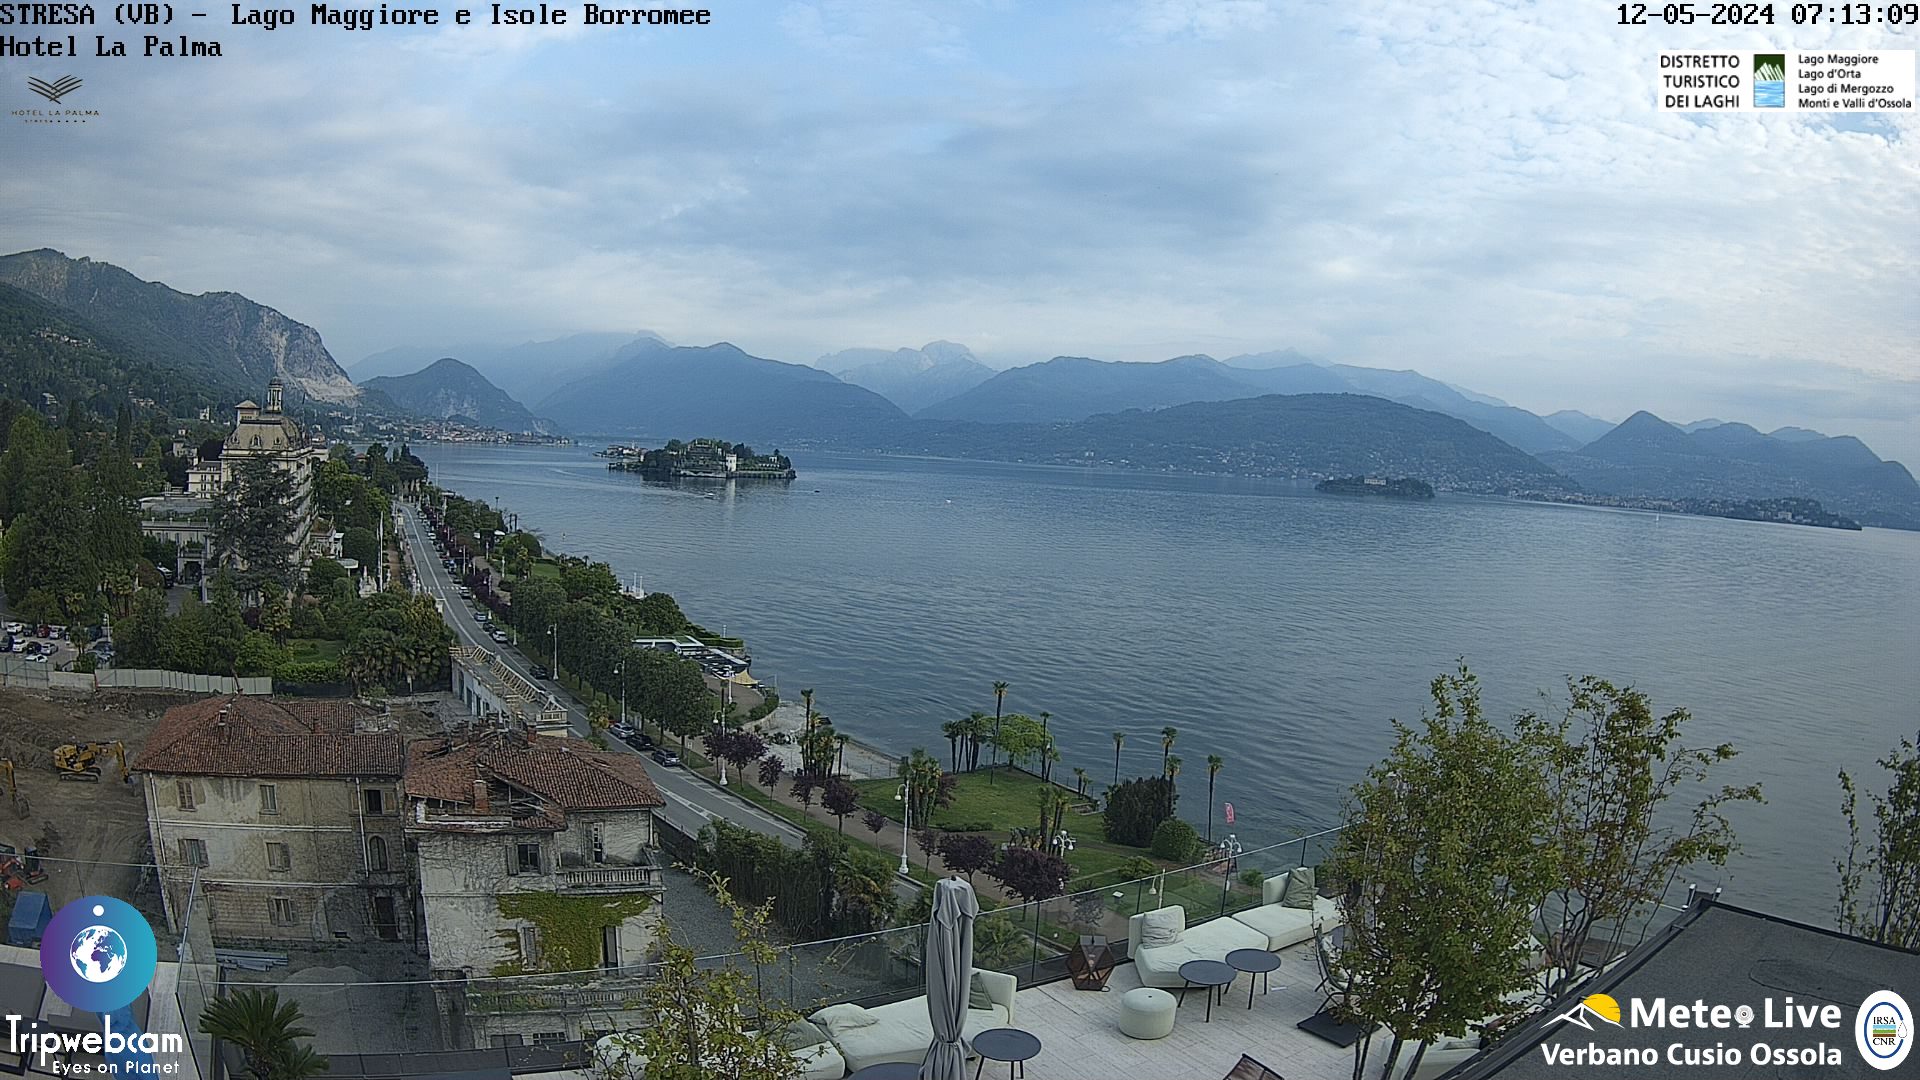 Stresa (Lago Maggiore) Tor. 08:17